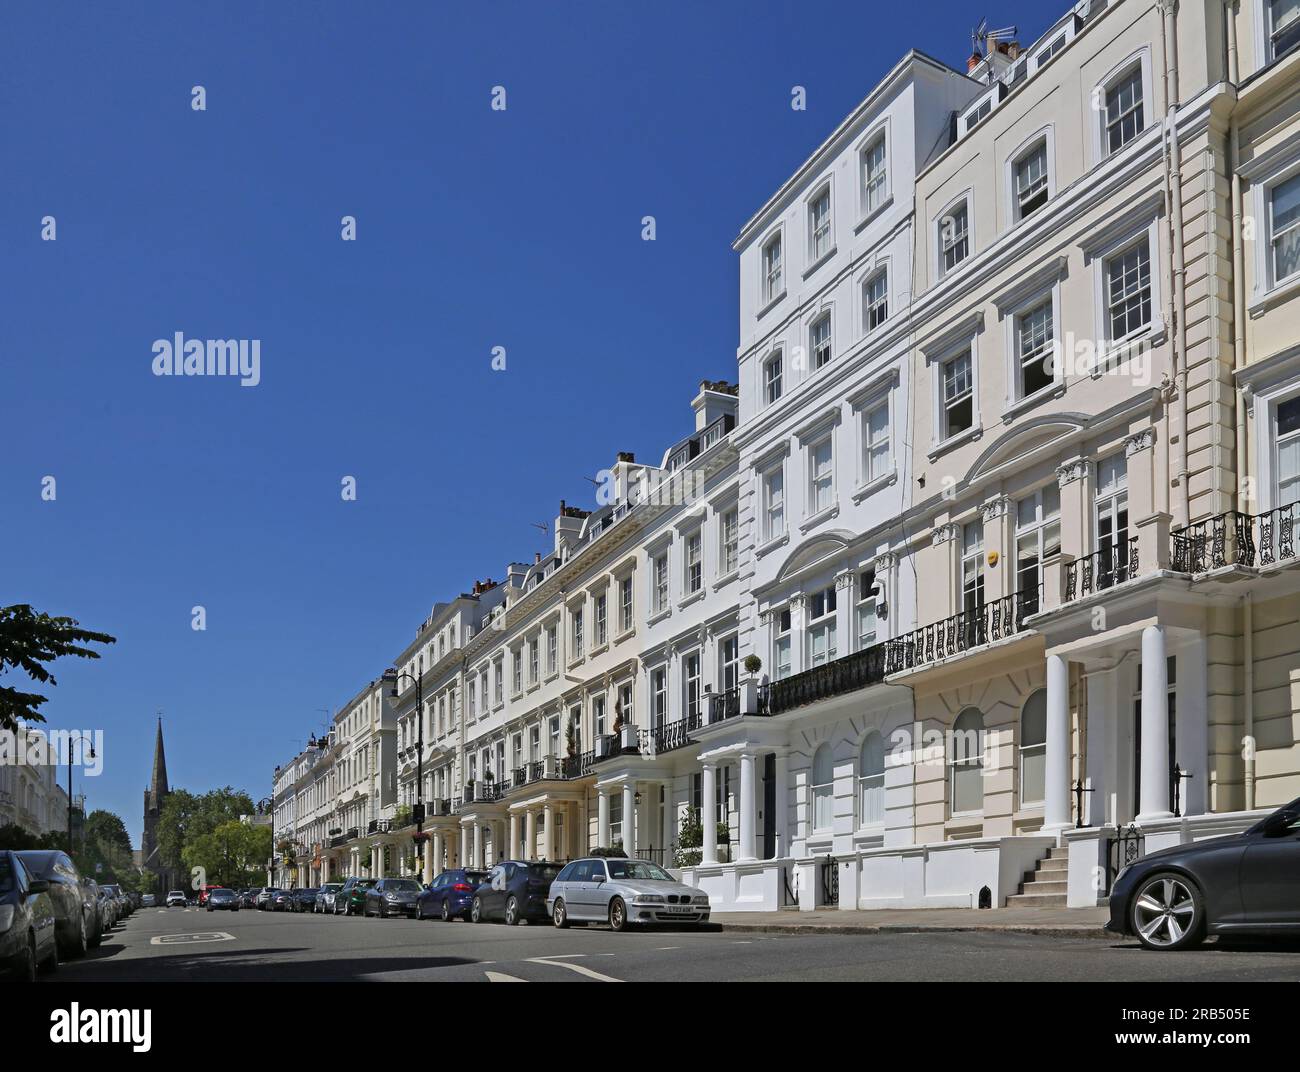 London, Vereinigtes Königreich: Luxushäuser in Kensington Park Gardens, Notting Hill Gate, einer der reichsten Gegenden Londons. Riesige Luxushäuser im Regency-Stil. Stockfoto